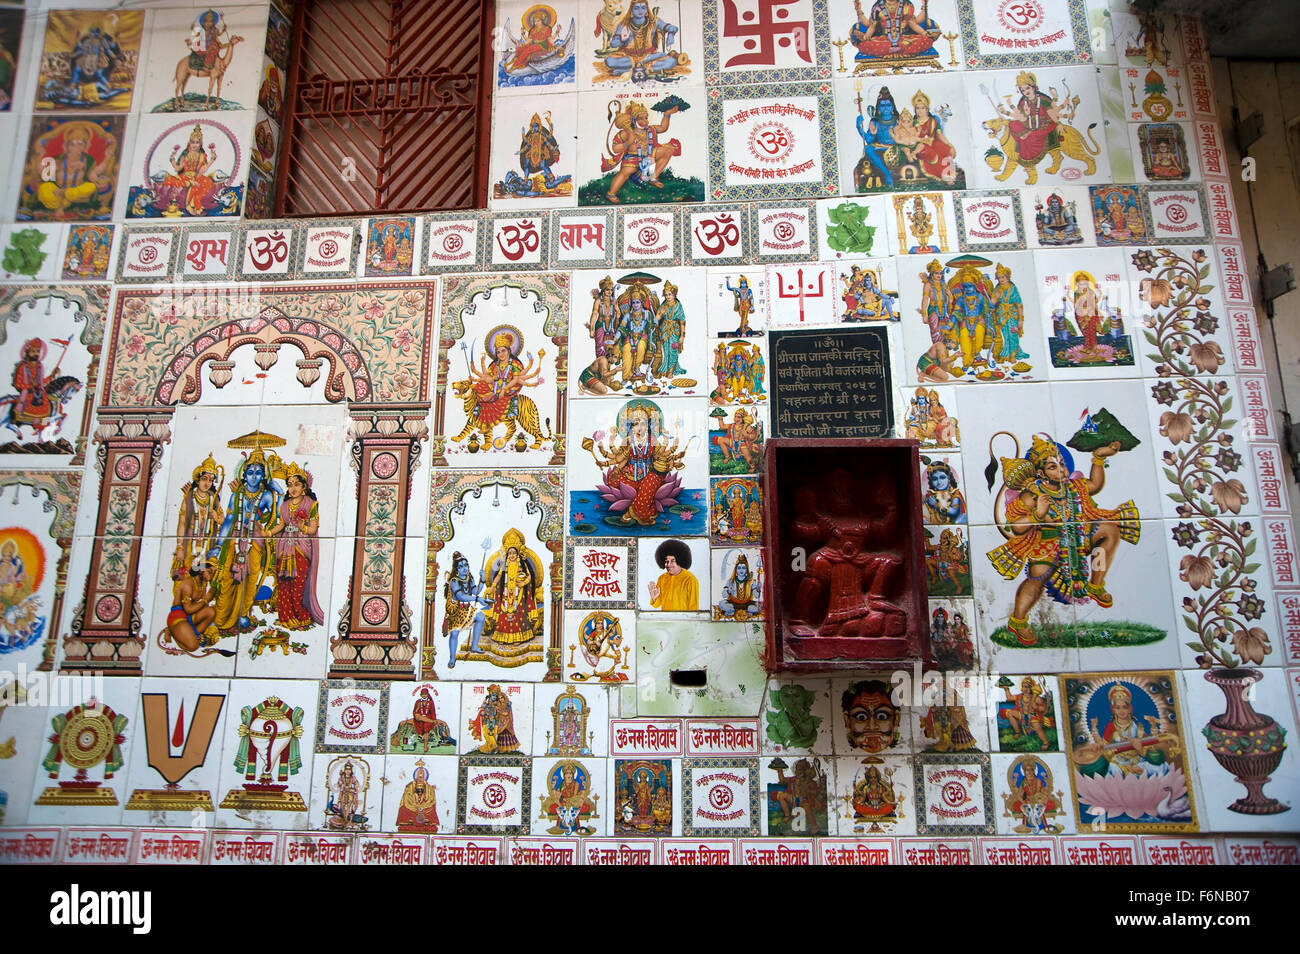 Carreaux de peinture murale Dieu et Déesse, pakka mahal, varanasi, uttar pradesh, inde, asie Banque D'Images